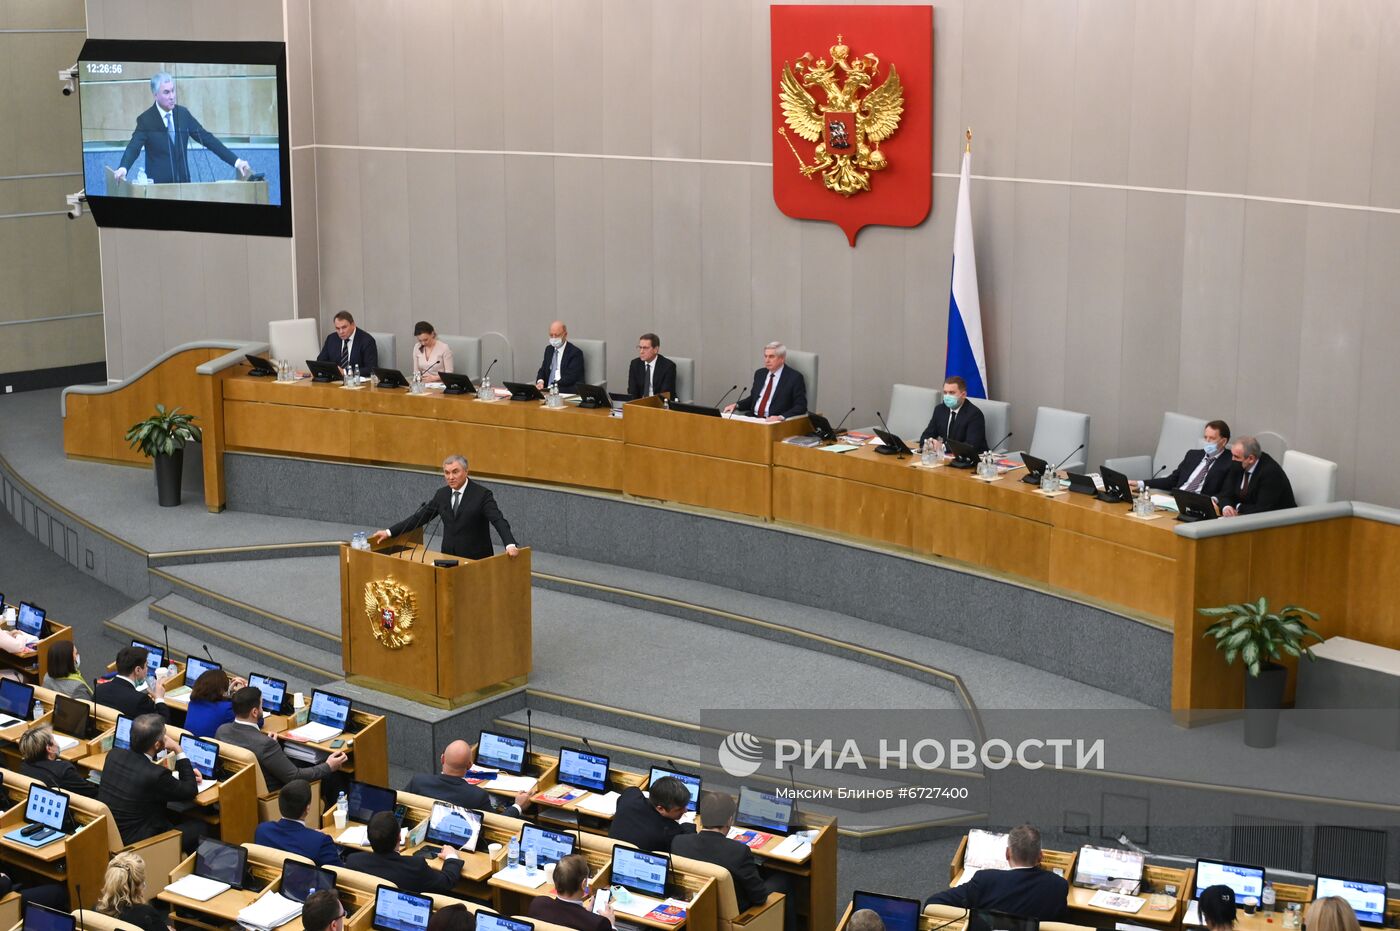 Завершение осенней сессии Госдумы РФ